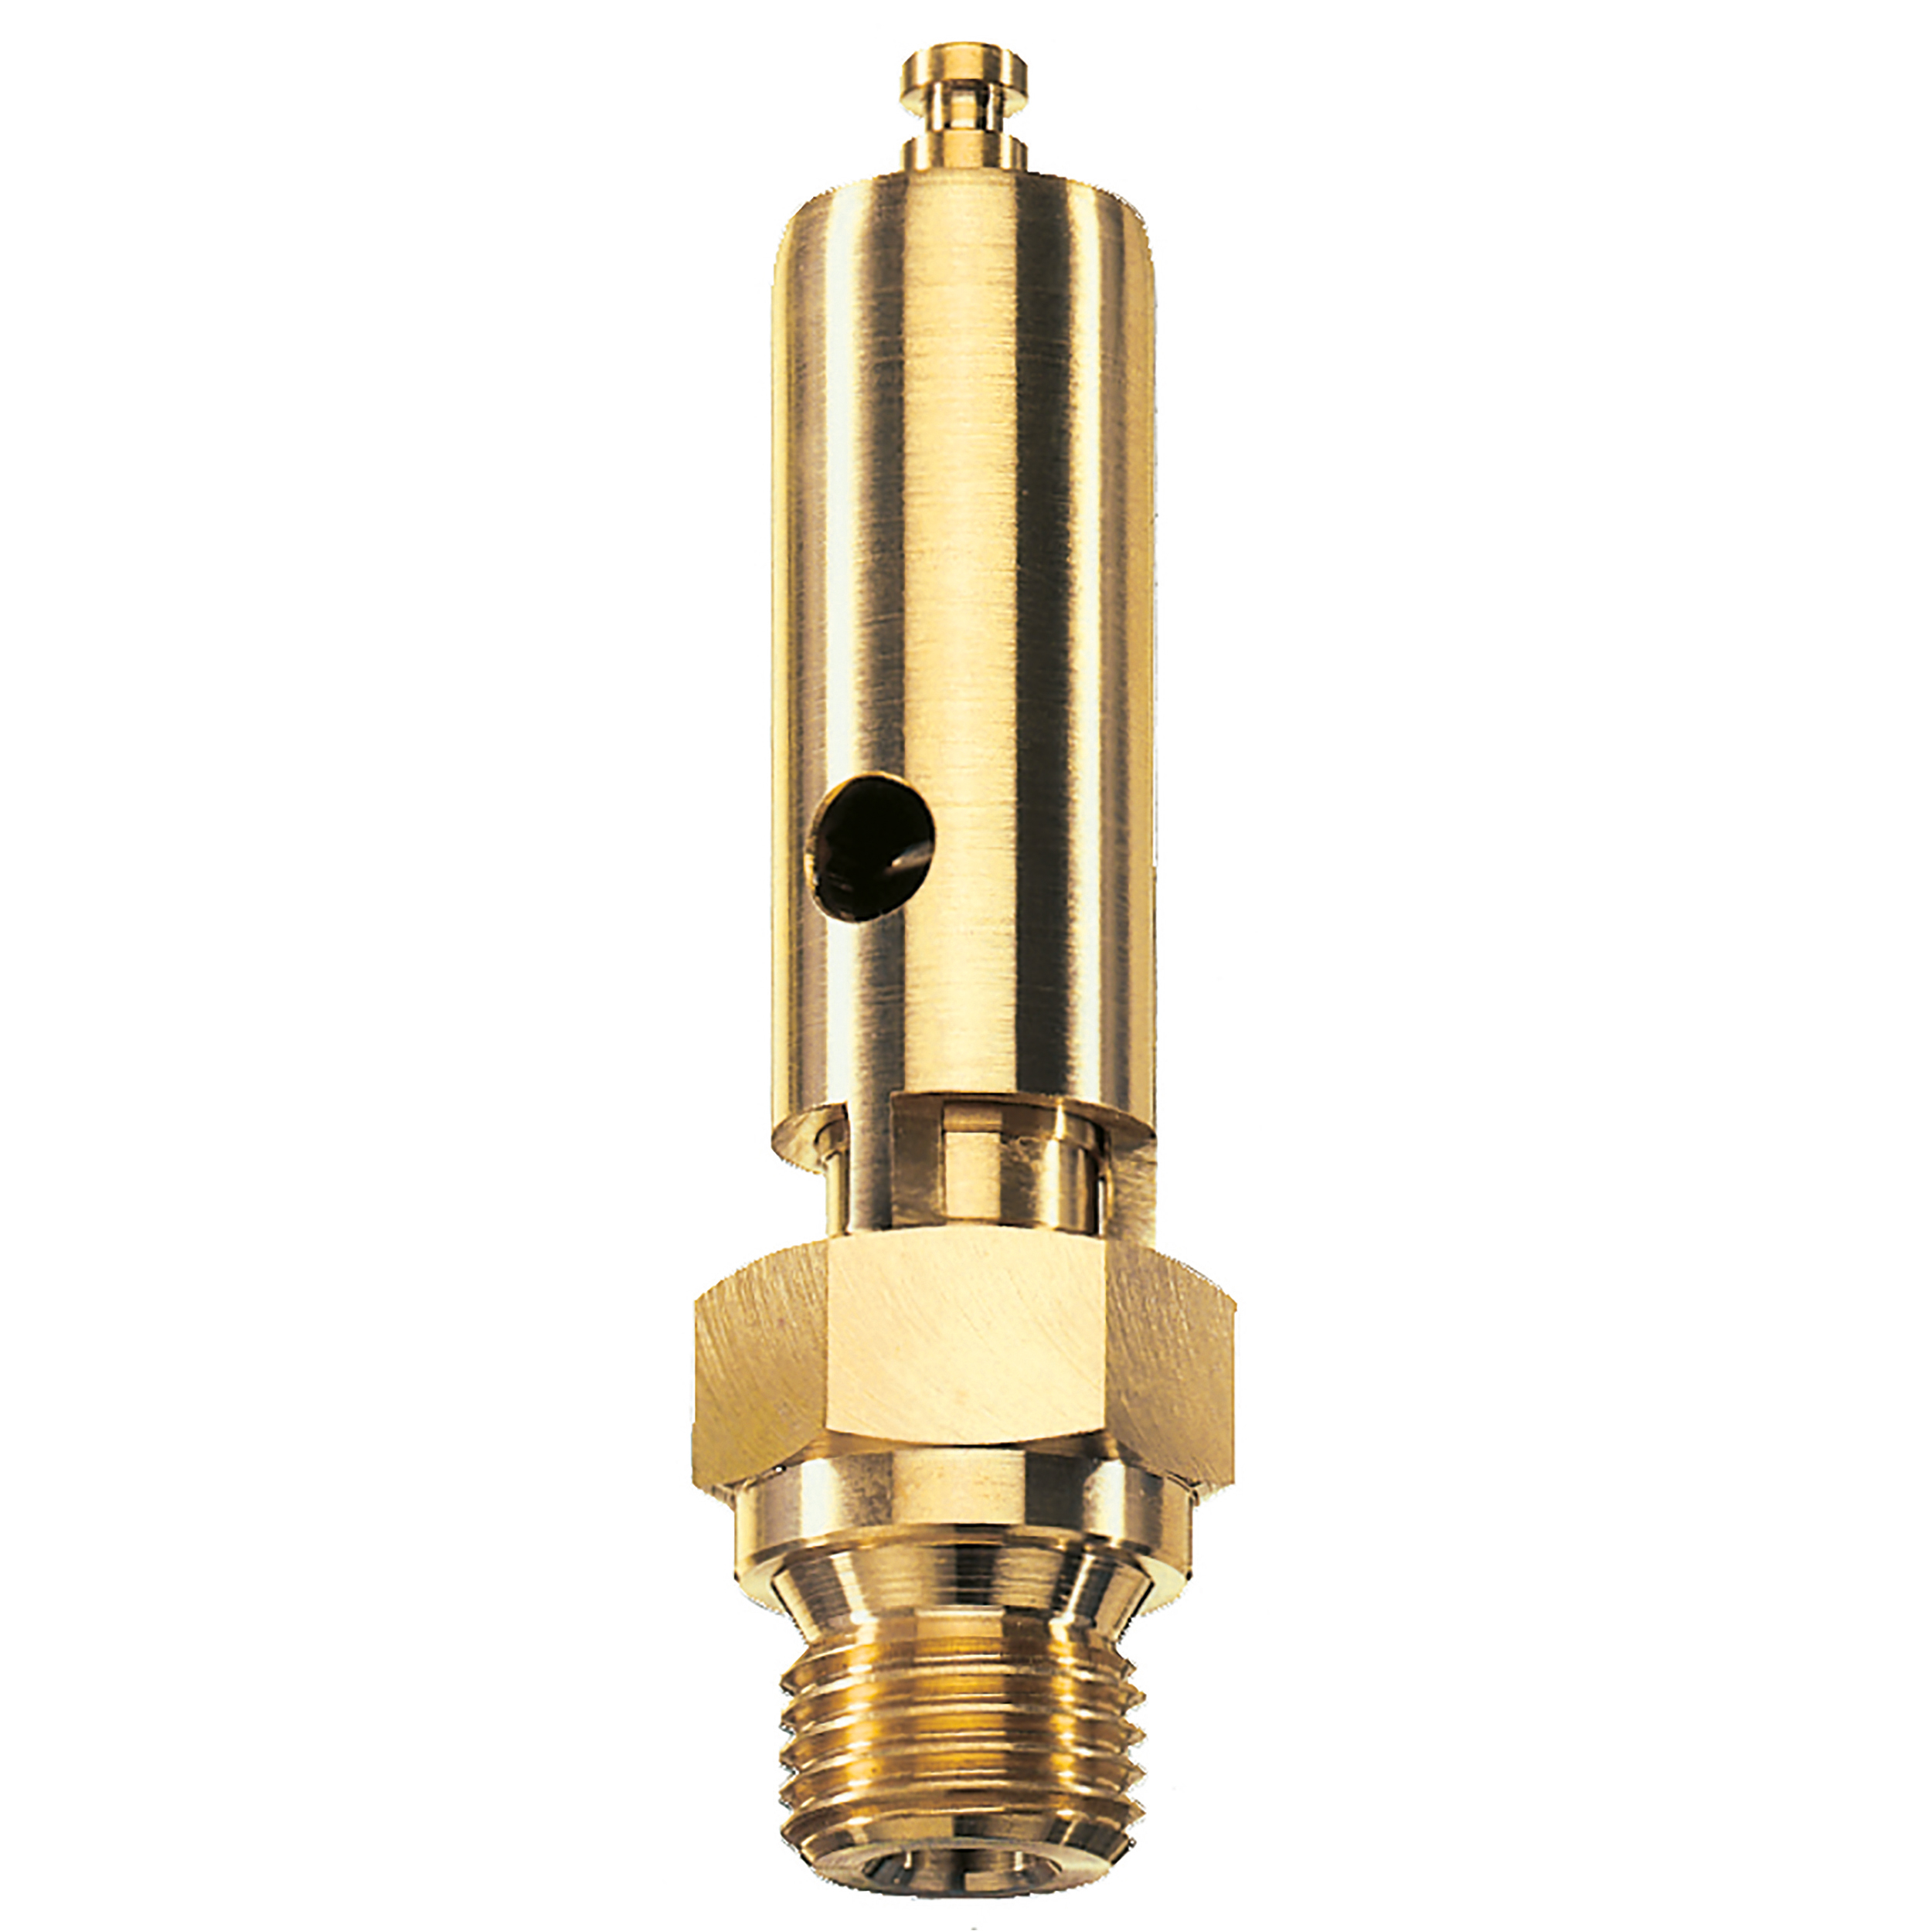 Savety valve component tested DN 6, G¼, L: 60 mm, seal: FKM, set pressure: 20.6 bar (298,7 psi), TÜV approval